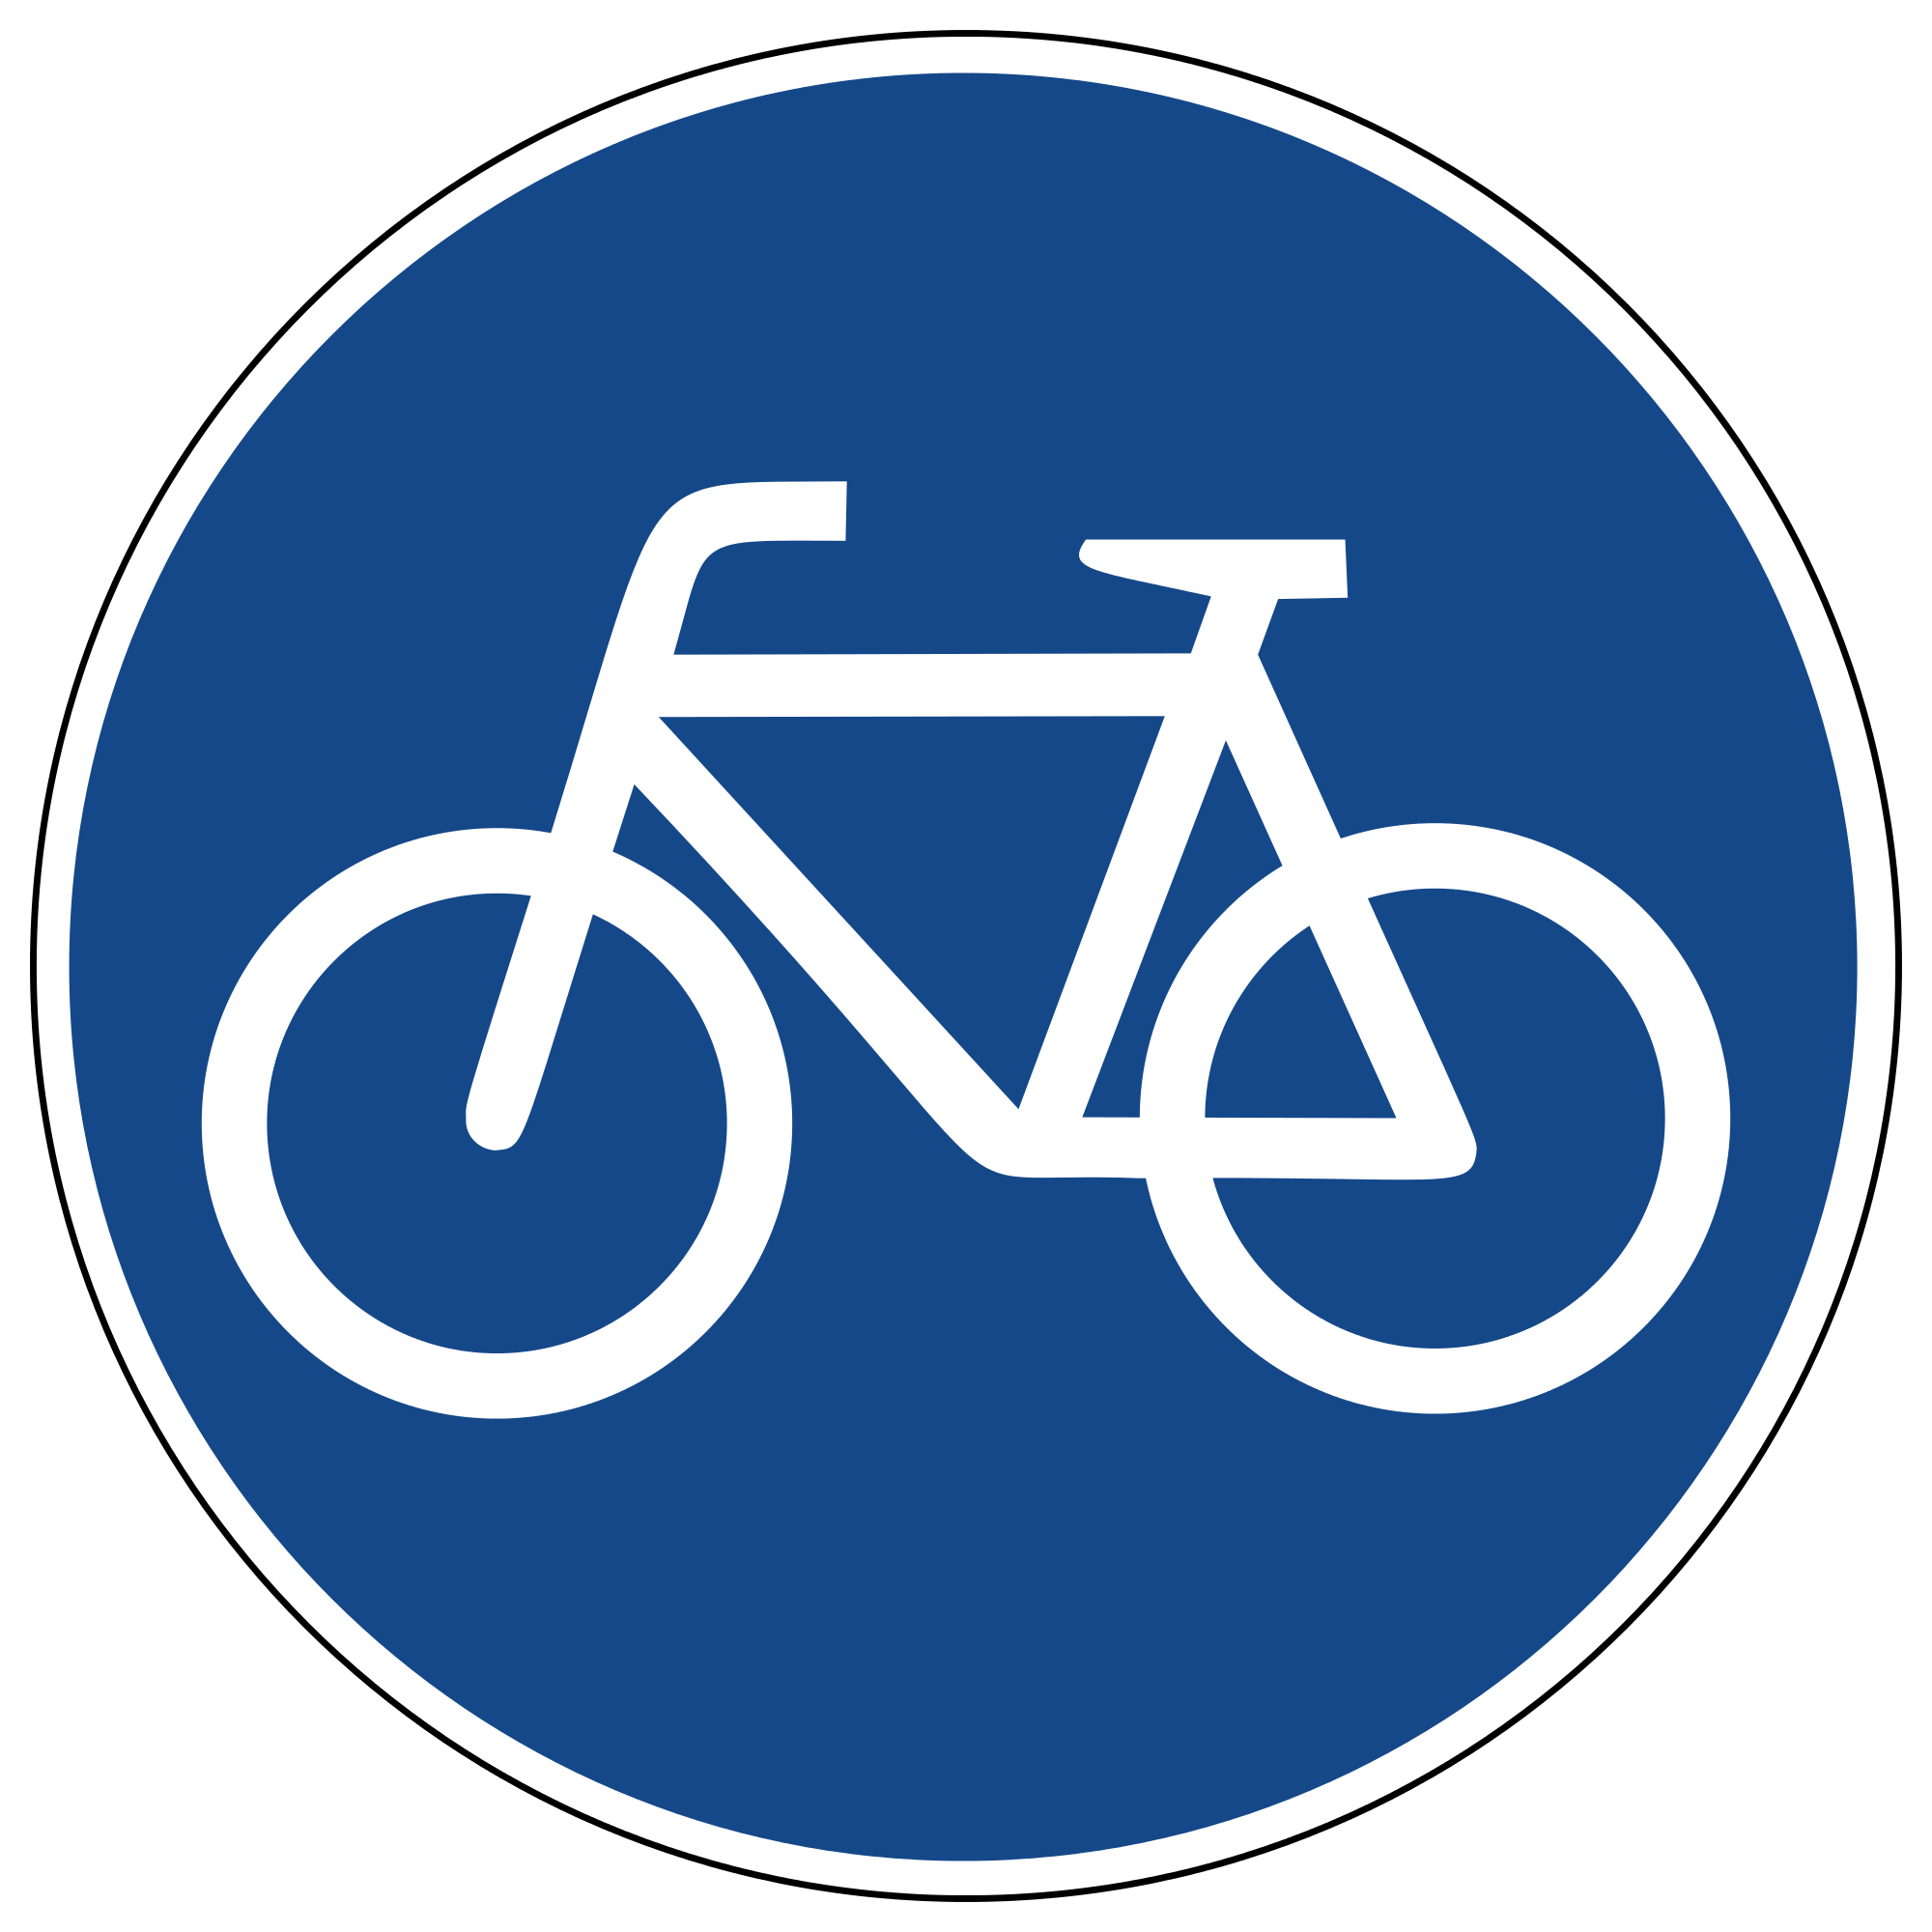 Fahrrad Verkehrszeichen 237